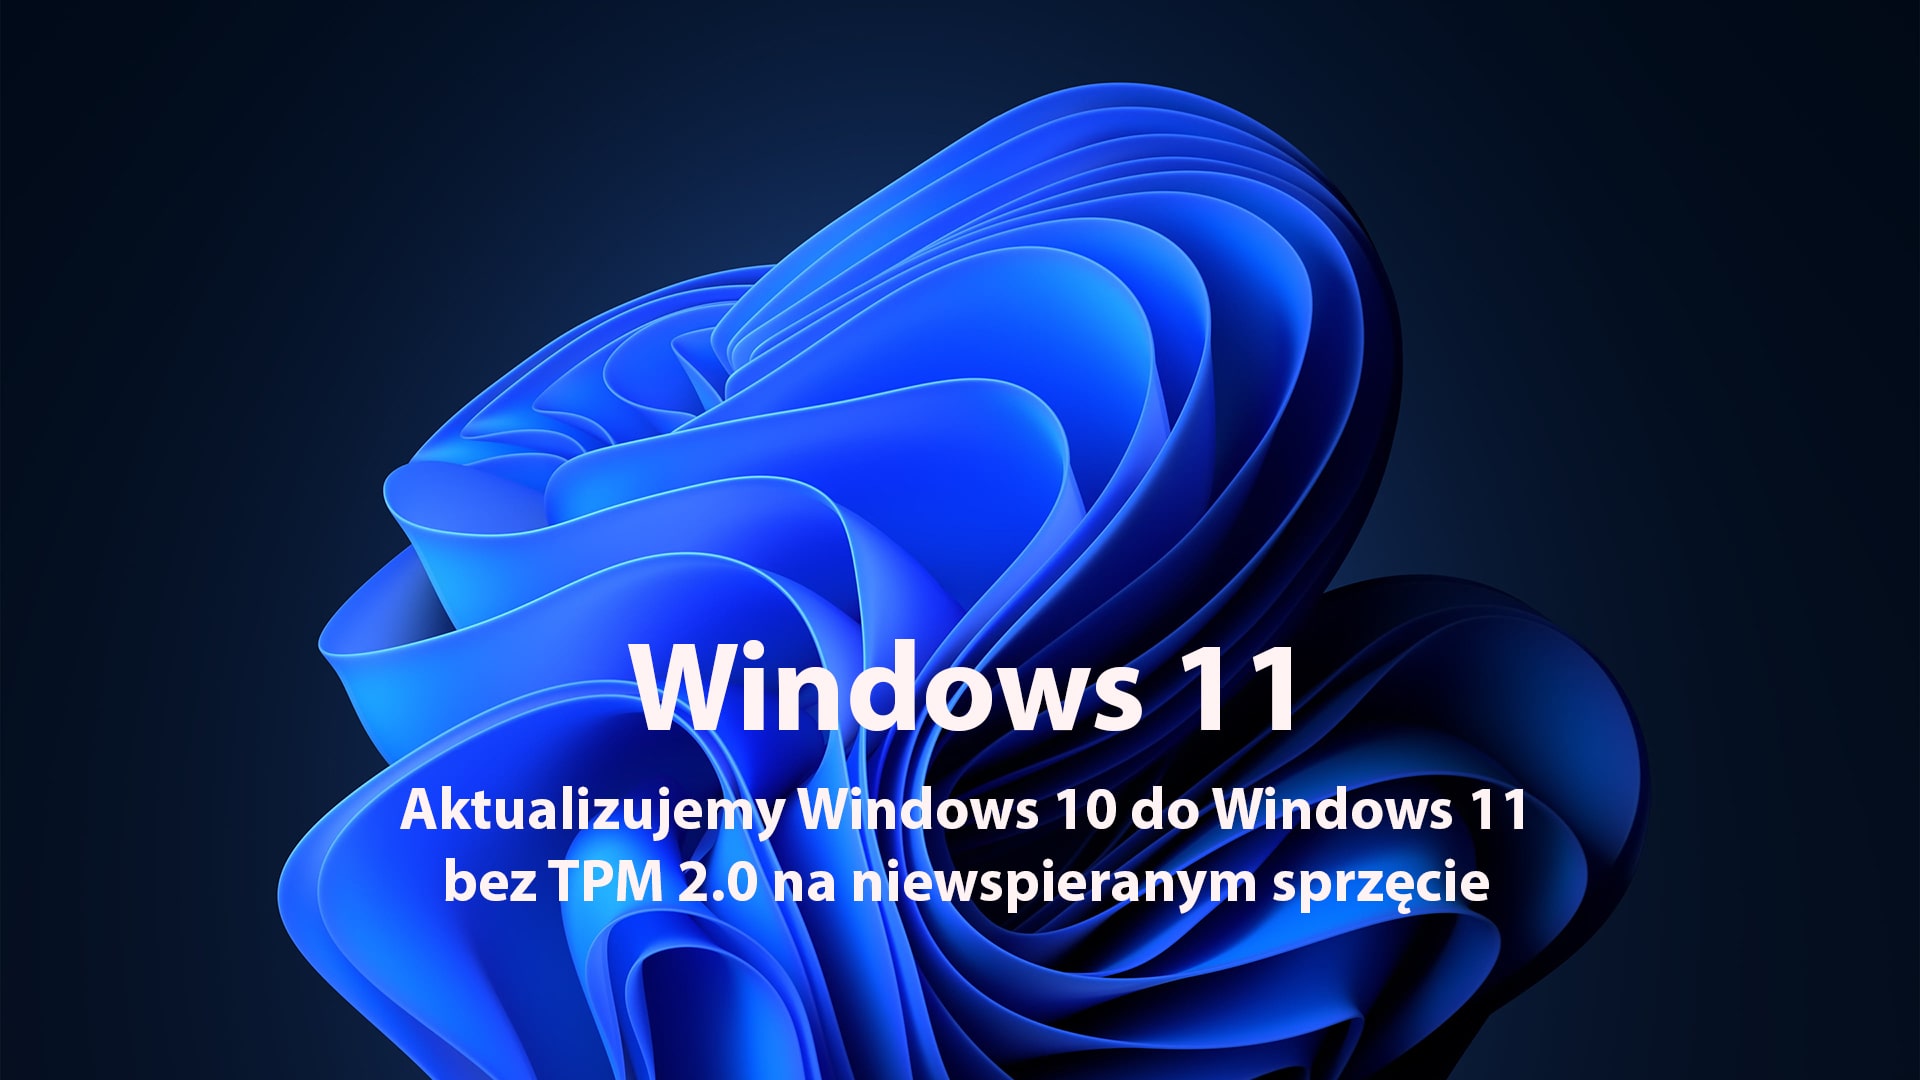 Aktualizujemy Windows 10 do Windows 11 bez TPM 2.0 na niewspieranym sprzęcie